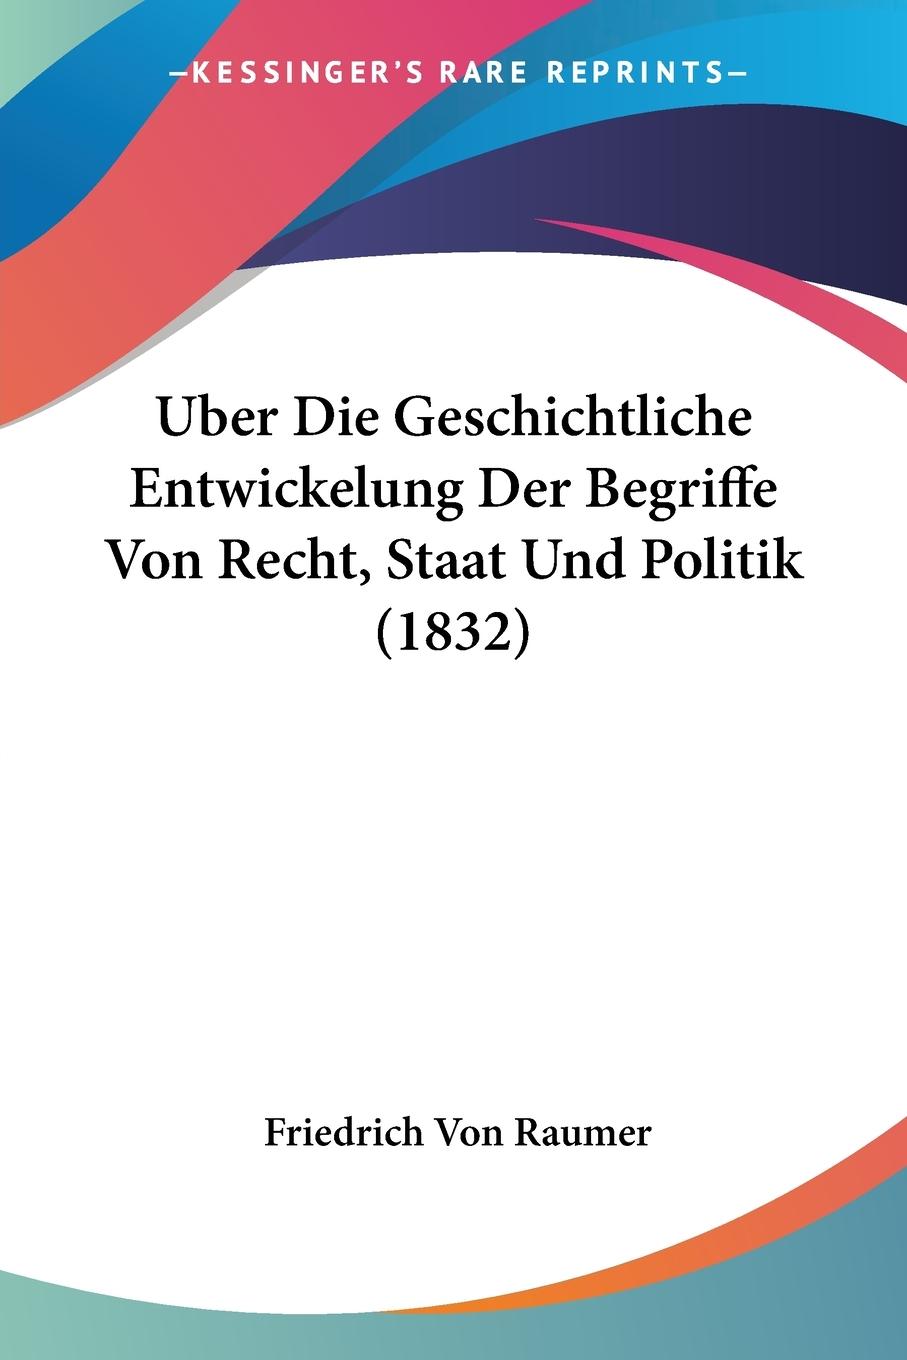 Uber Die Geschichtliche Entwickelung Der Begriffe Von Recht, Staat Und Politik (1832) - Raumer, Friedrich Von